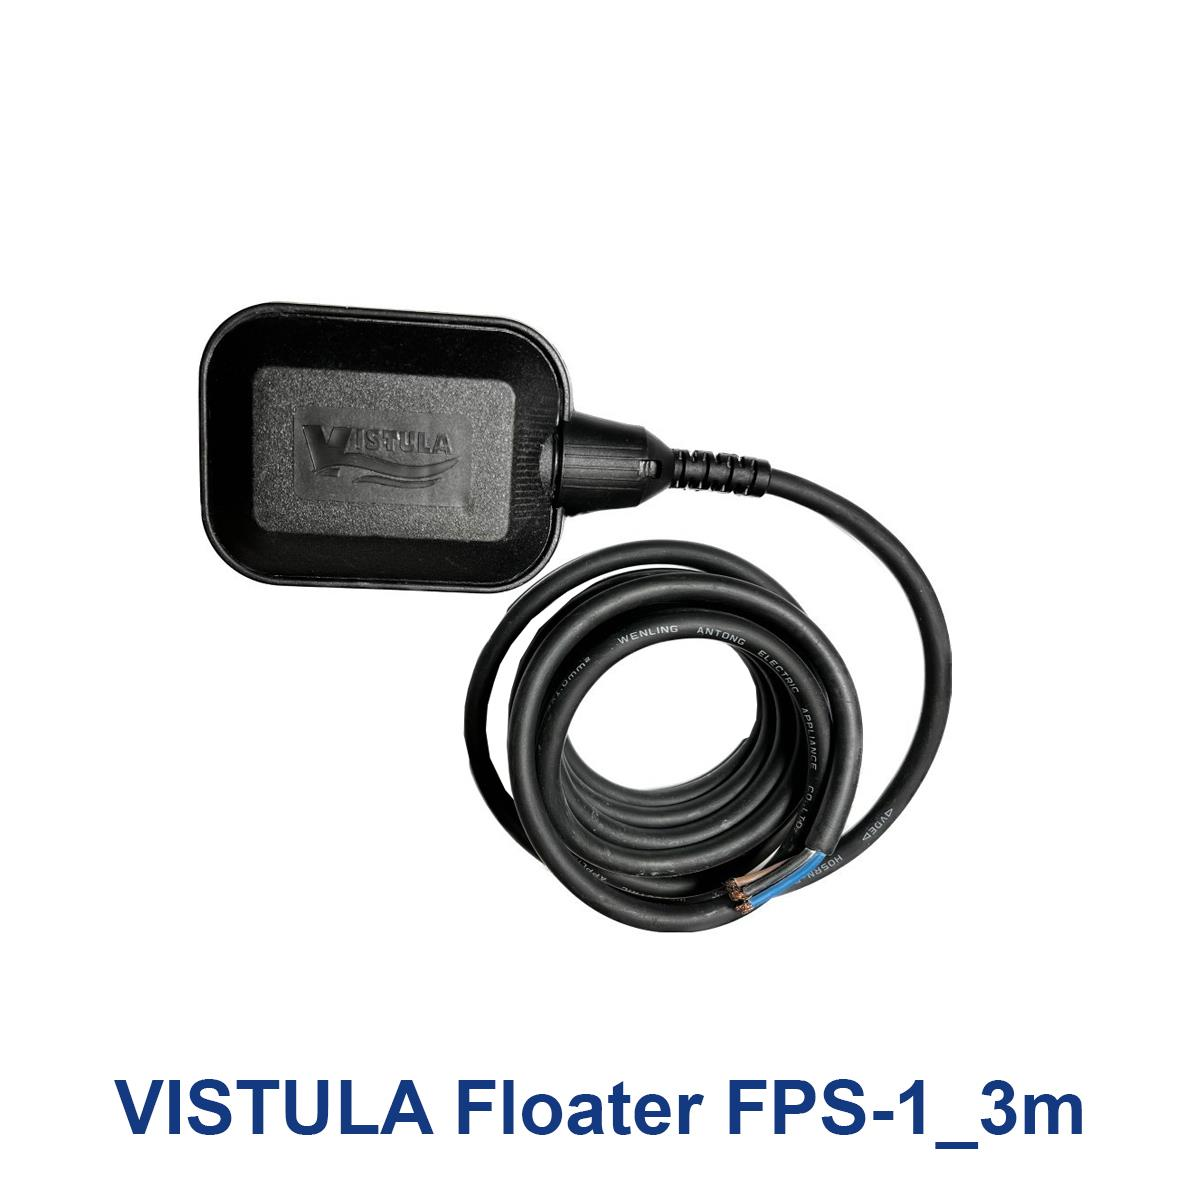 VISTULA-Floater-FPS-1_3m